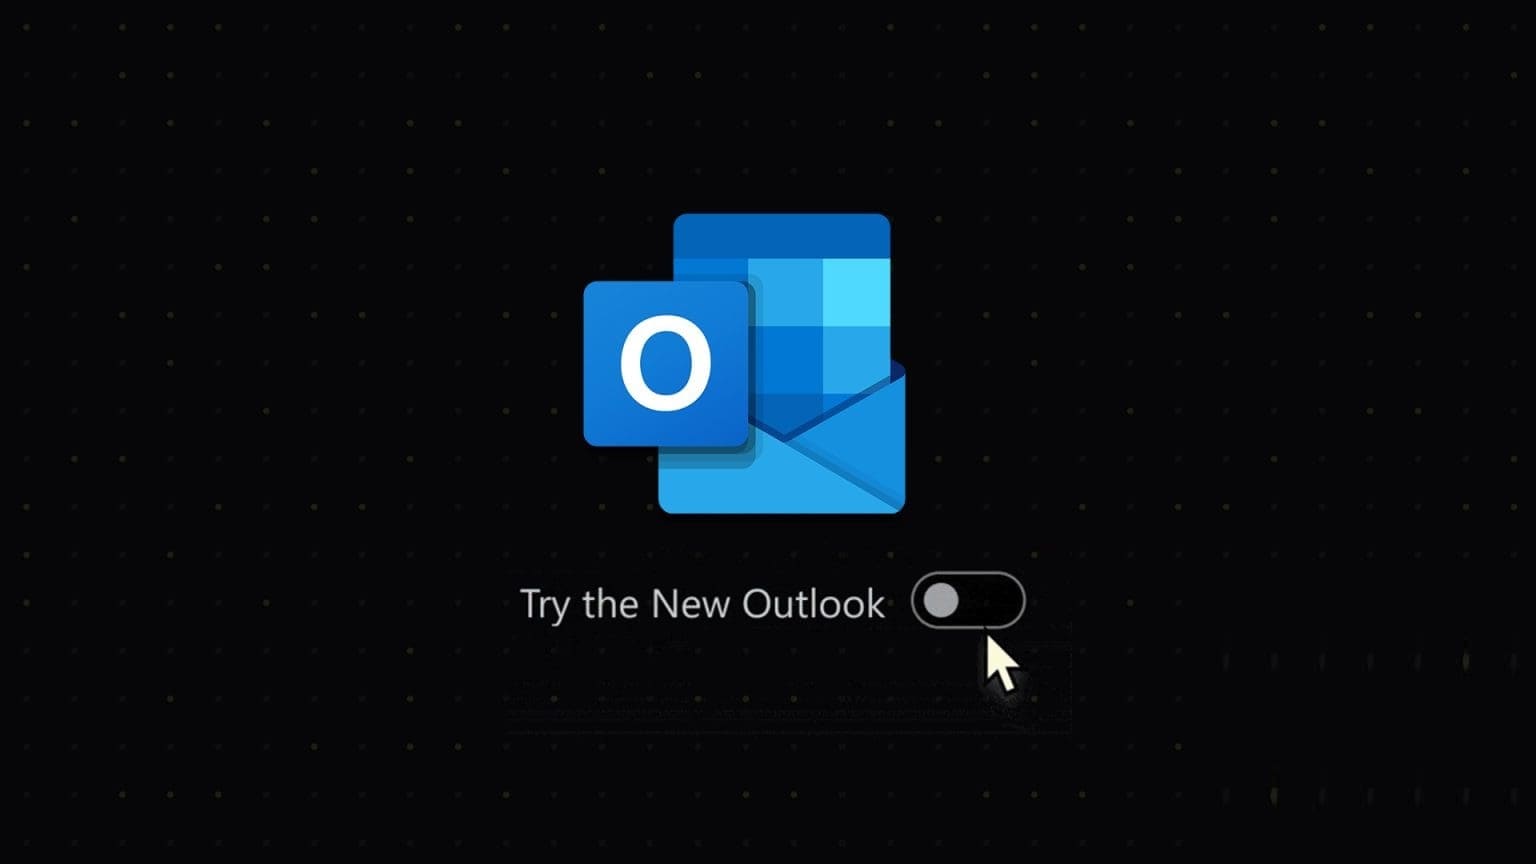 أفضل 4 طرق لتغيير Outlook الجديد إلى Outlook القديم (العرض الكلاسيكي) على Windows وMac - %categories